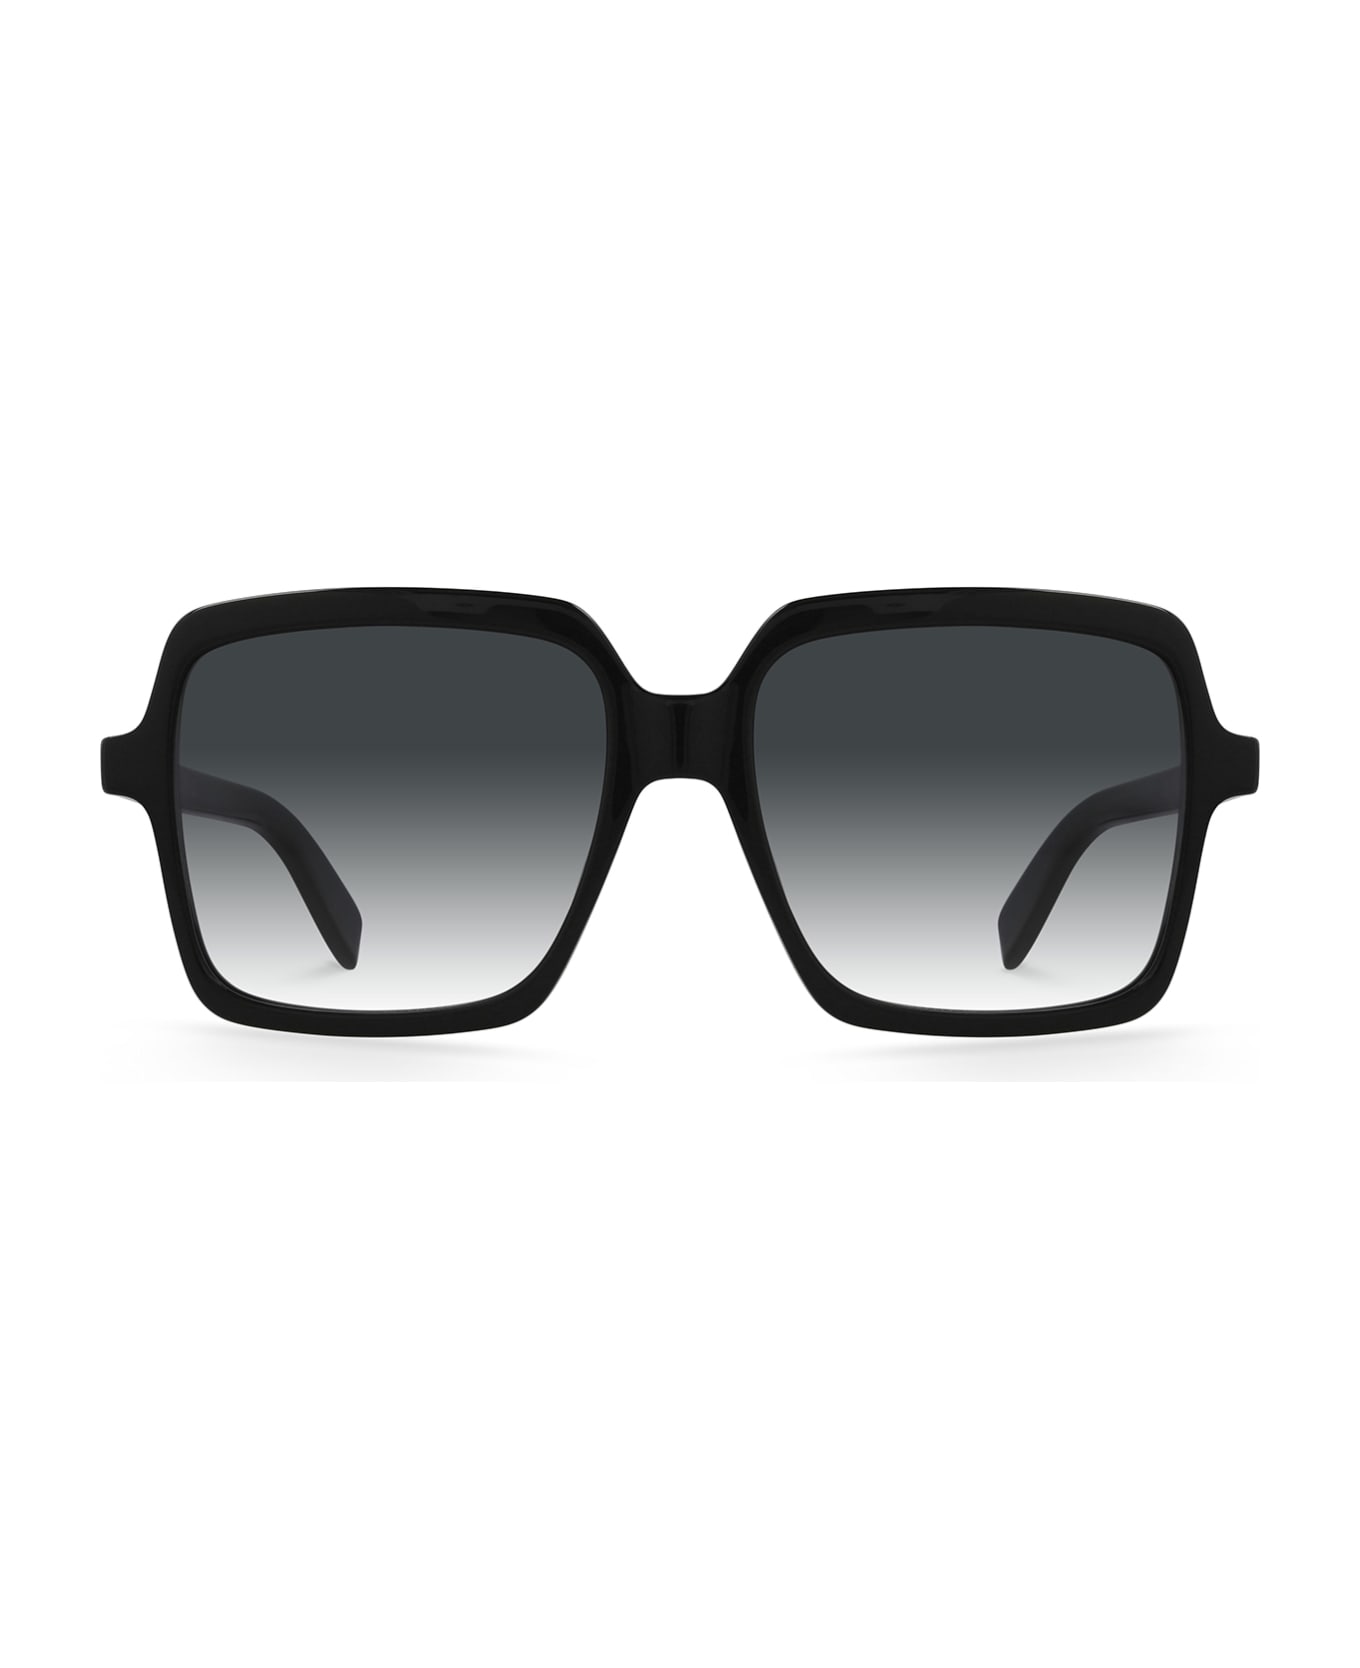 Saint Laurent Eyewear Sl 174 Black Sunglasses - Black サングラス